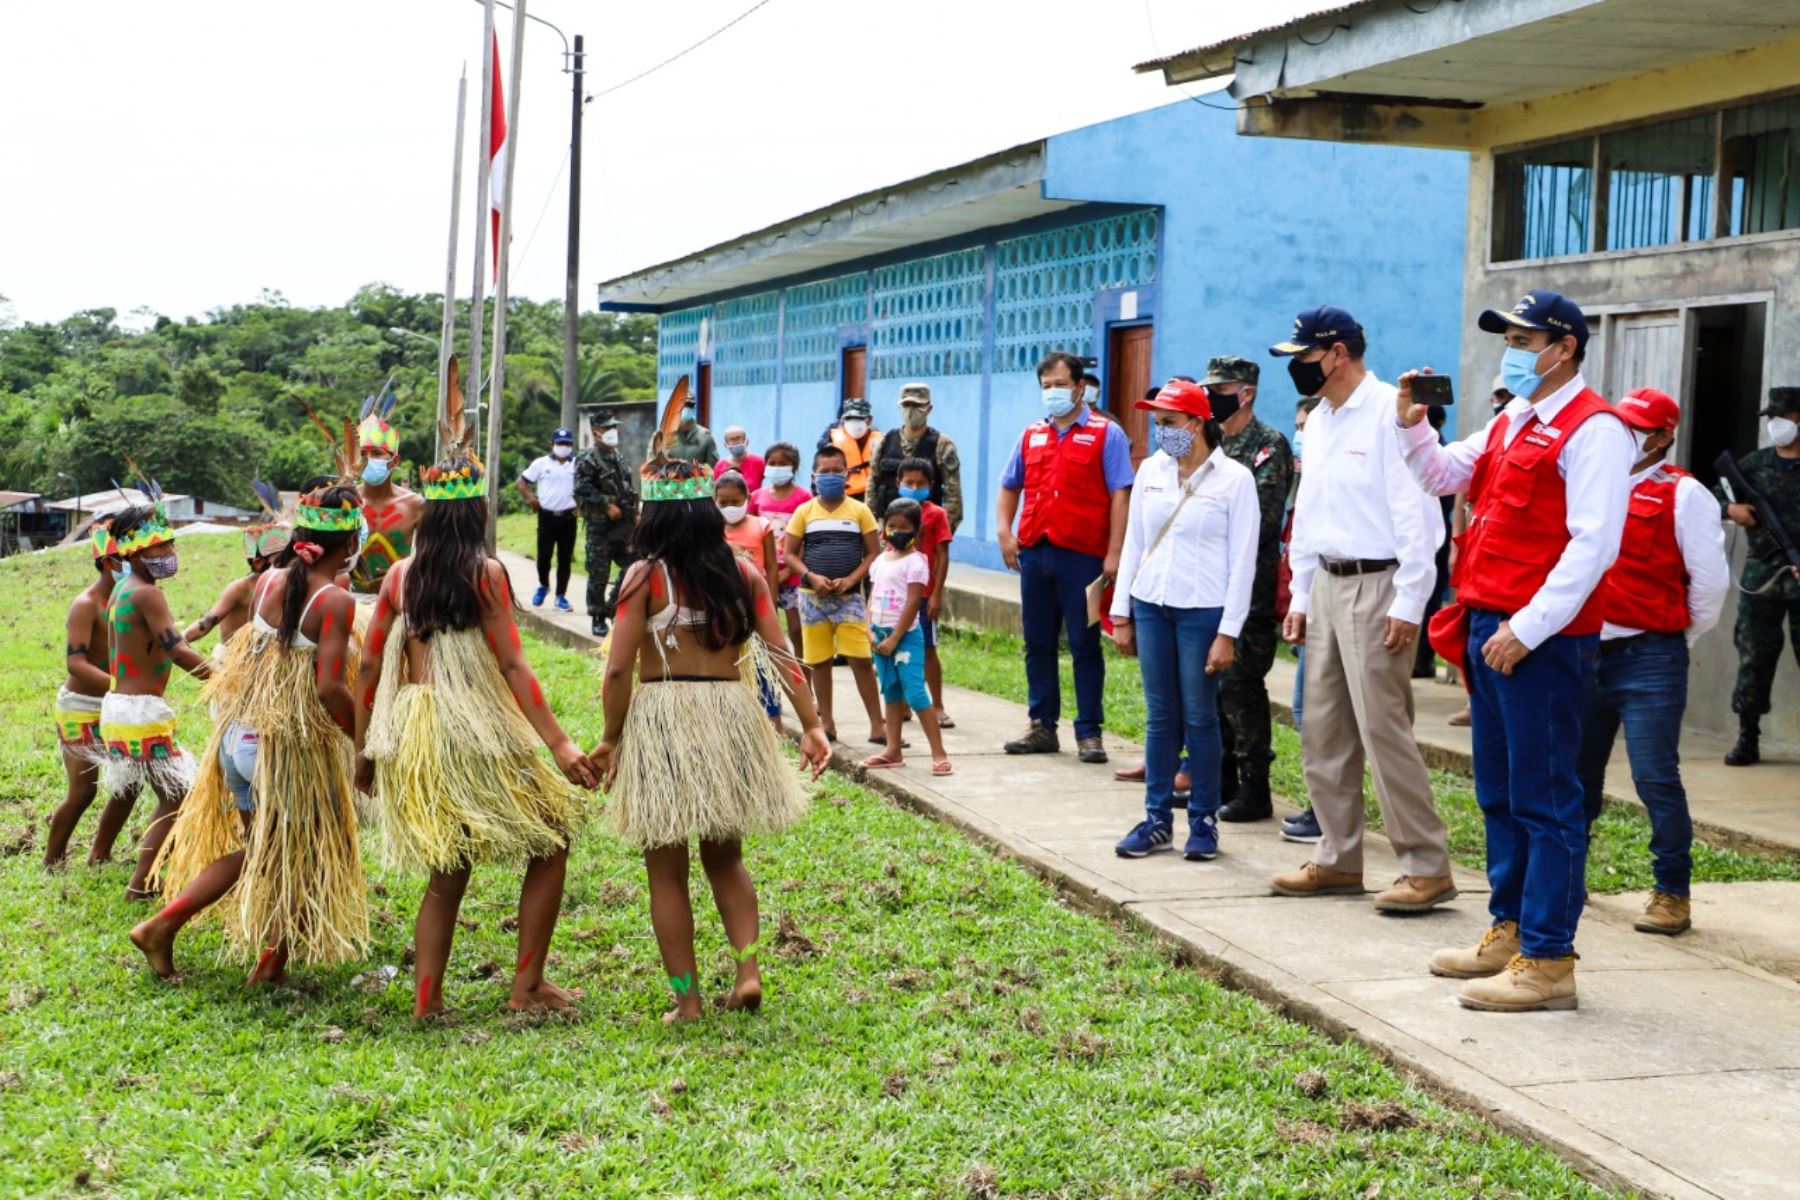 El presidente Martín Vizcarra, participa en la presentación del Núcleo Ejecutor del Proyecto Noa Jayatai – Mujer en la región Loreto. Este es el primer núcleo integrado por mujeres nativas de la Amazonía peruana. Foto: ANDINA/ Prensa Presidencia